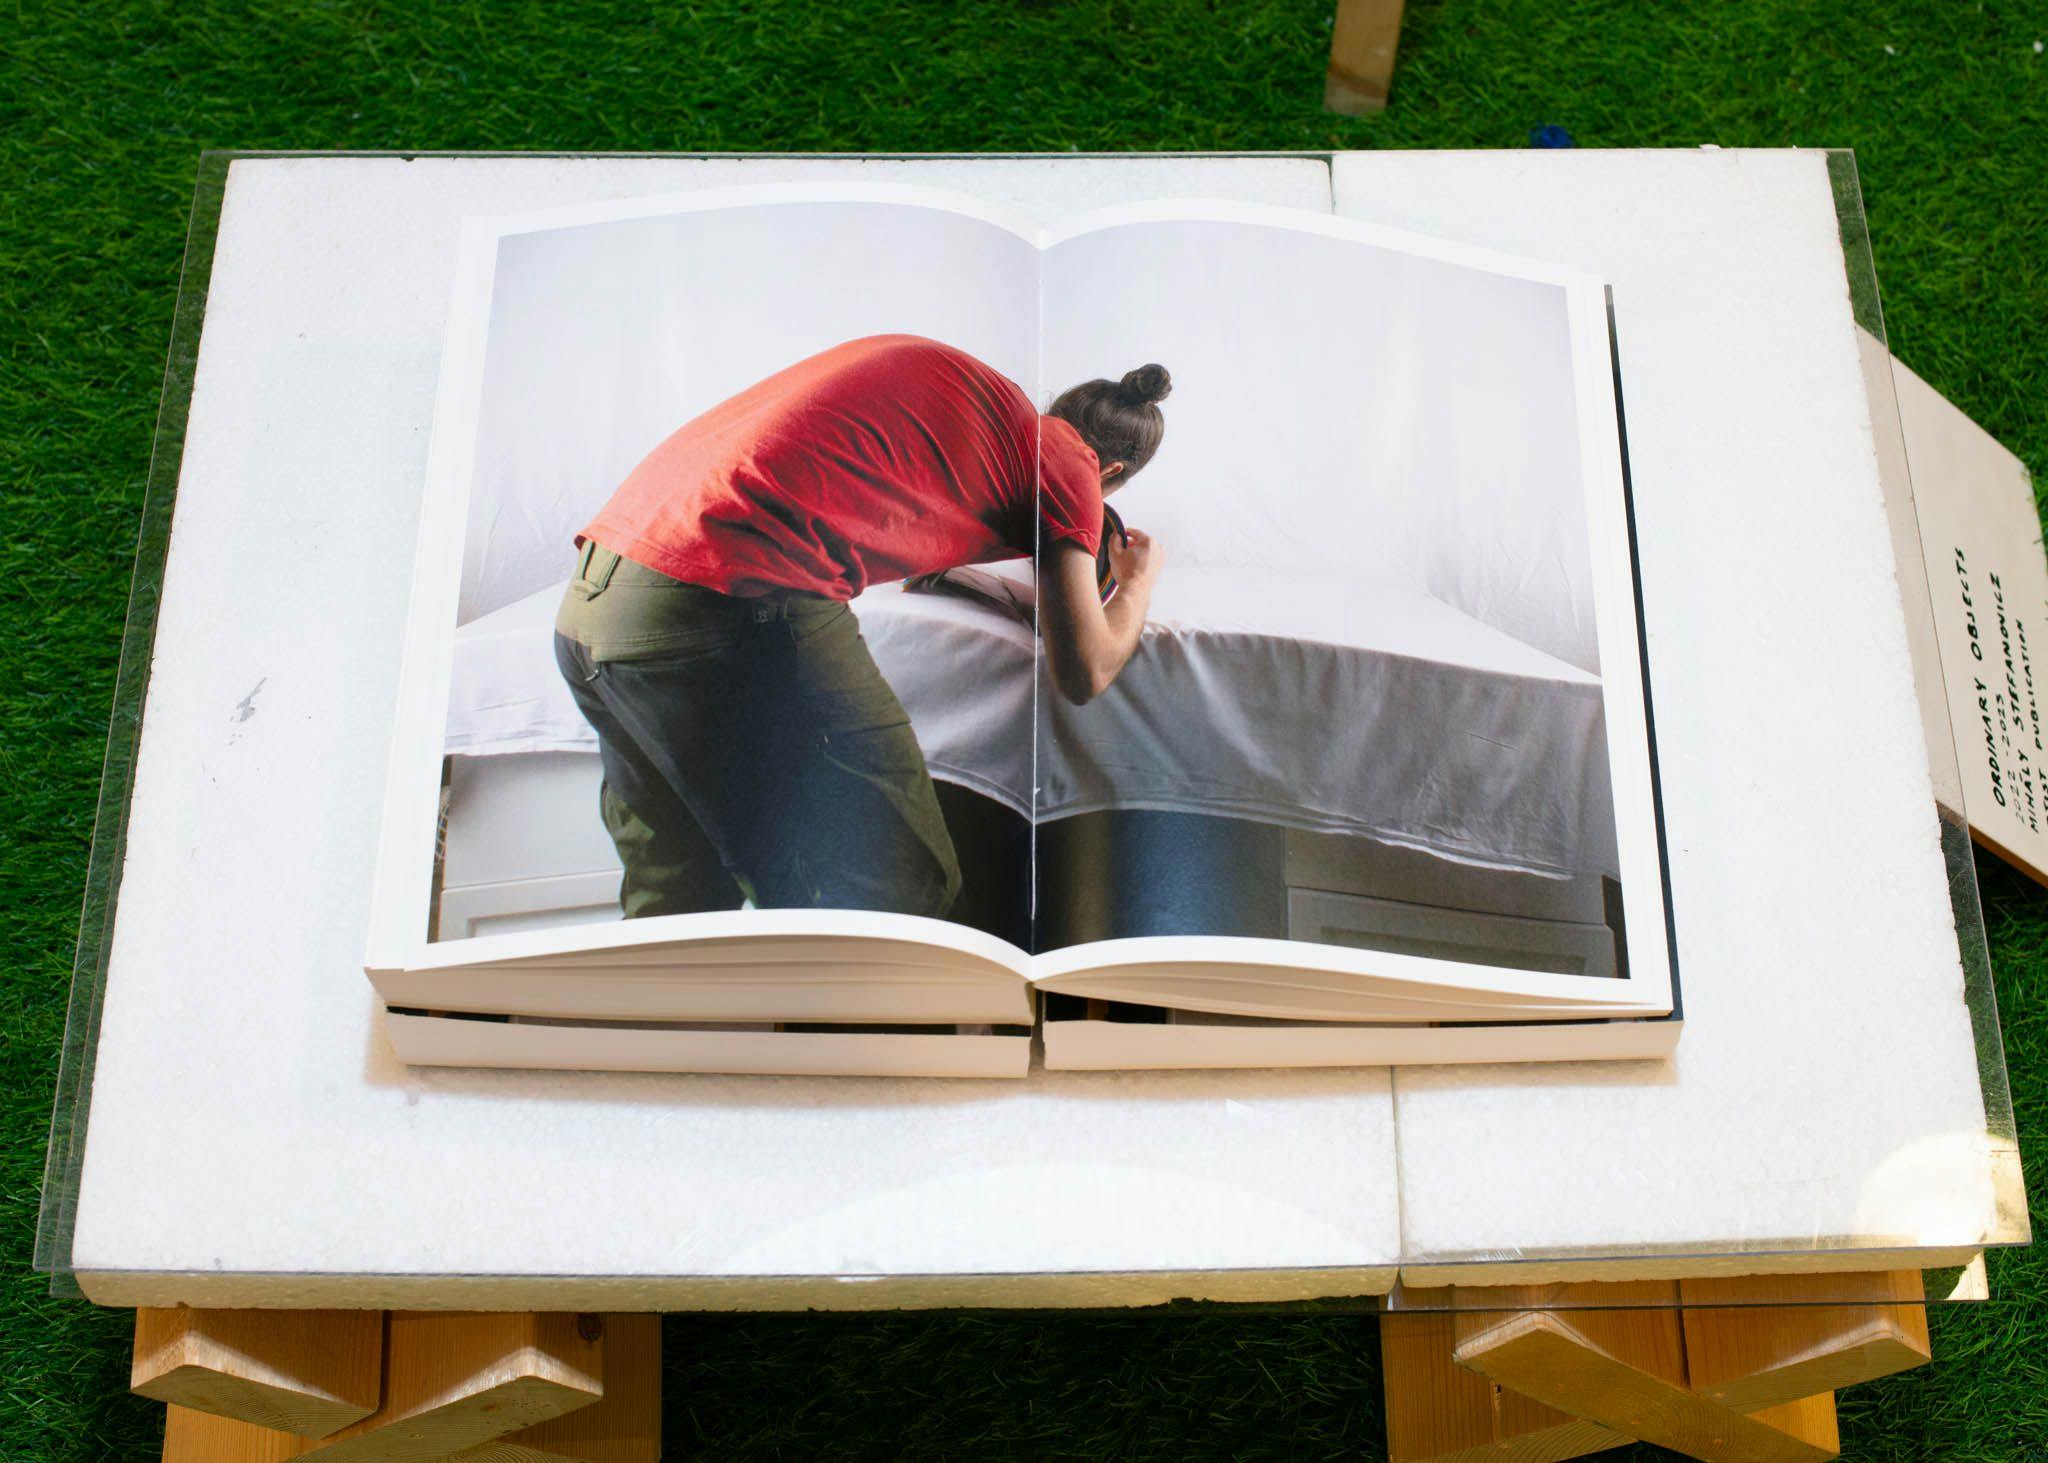 An open book shows a man bending over a table.